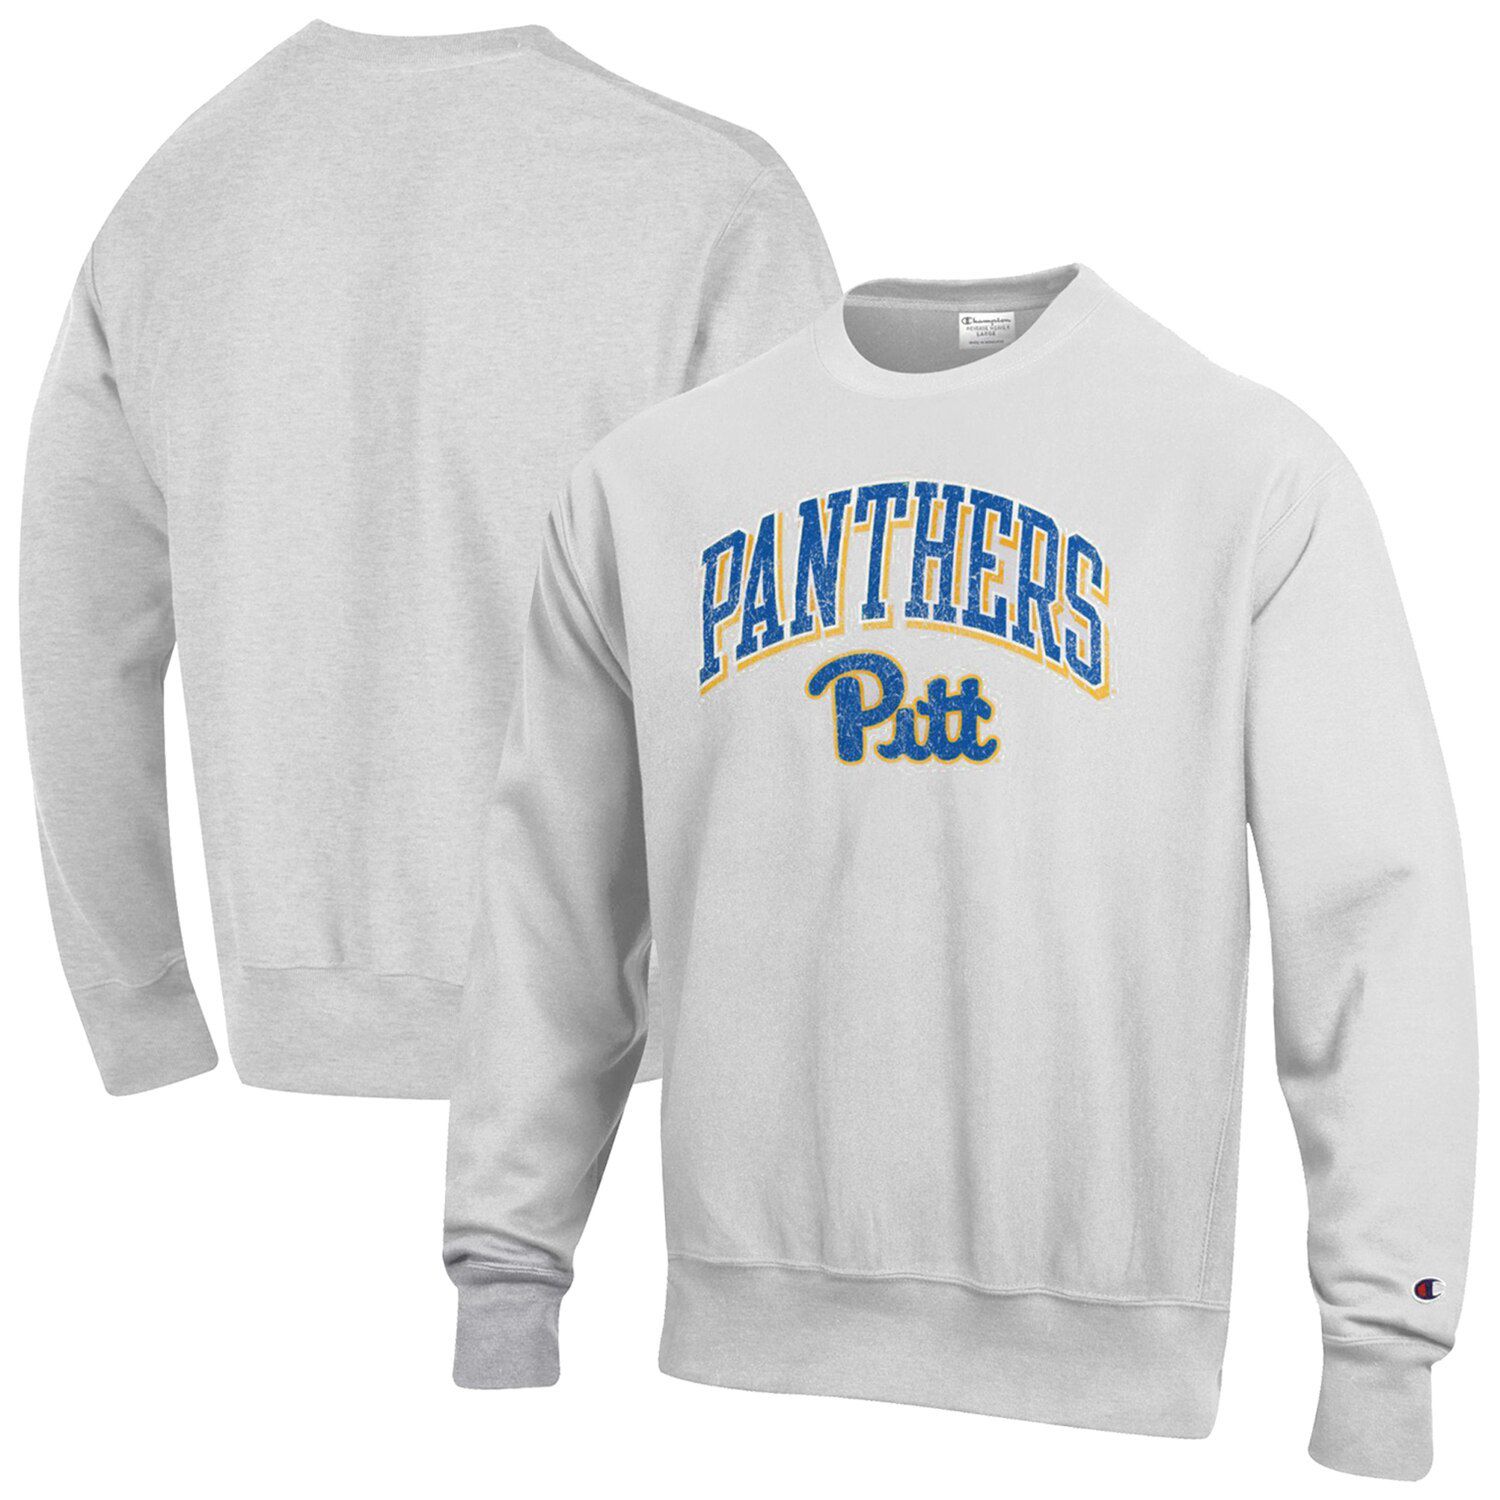 Мужской серый пуловер с логотипом Pitt Panthers обратного переплетения с аркой и логотипом Champion